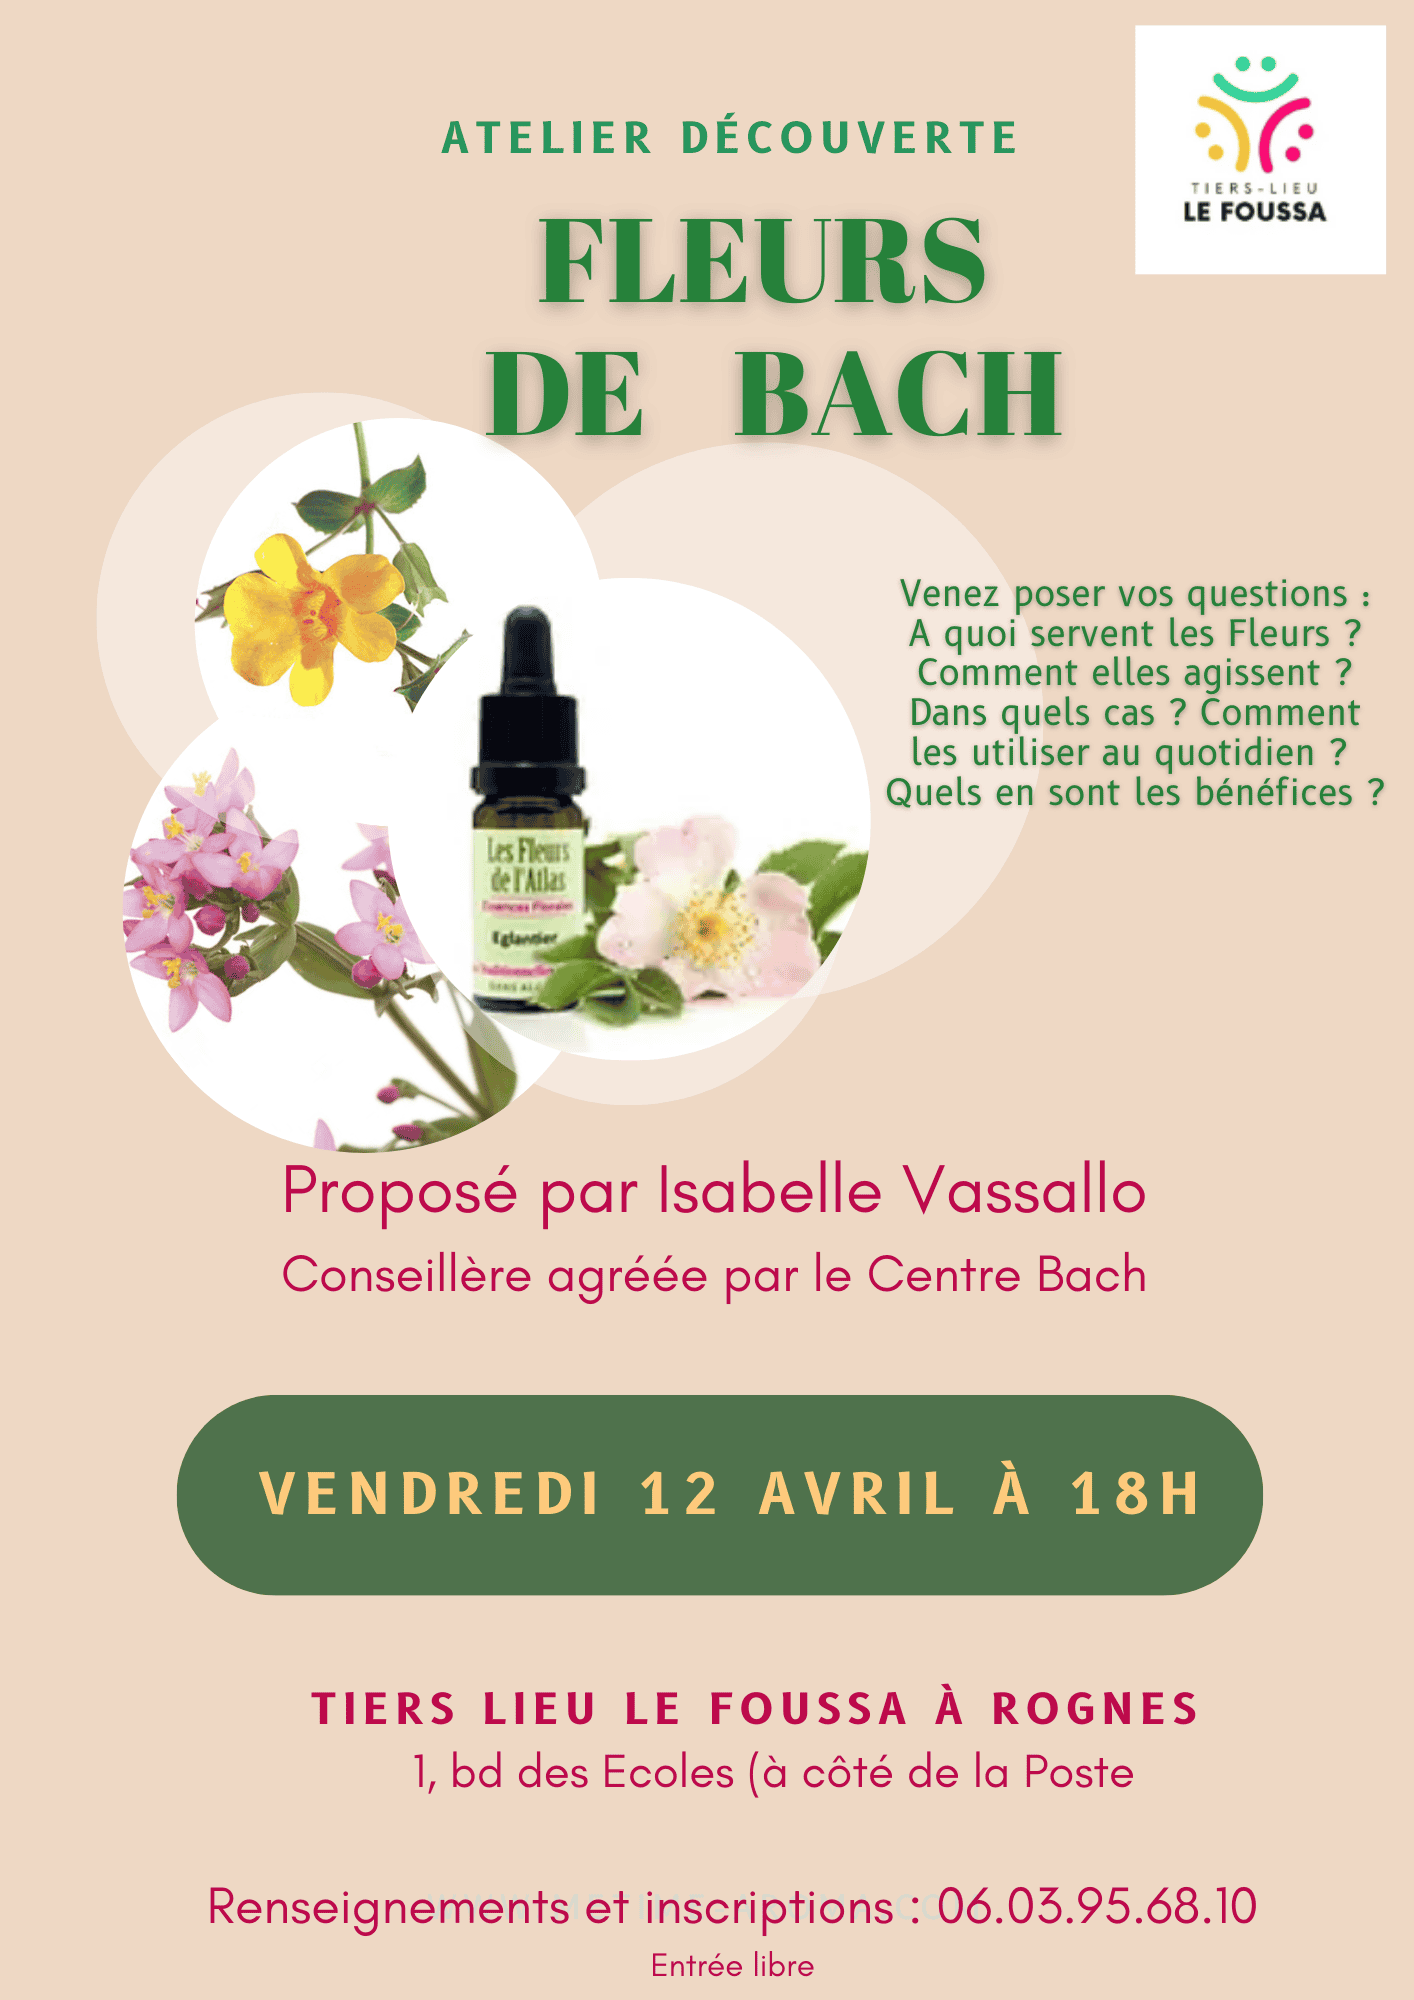 Fleurs de Bach à Rognes, le vendredi 12 avril au Foussa